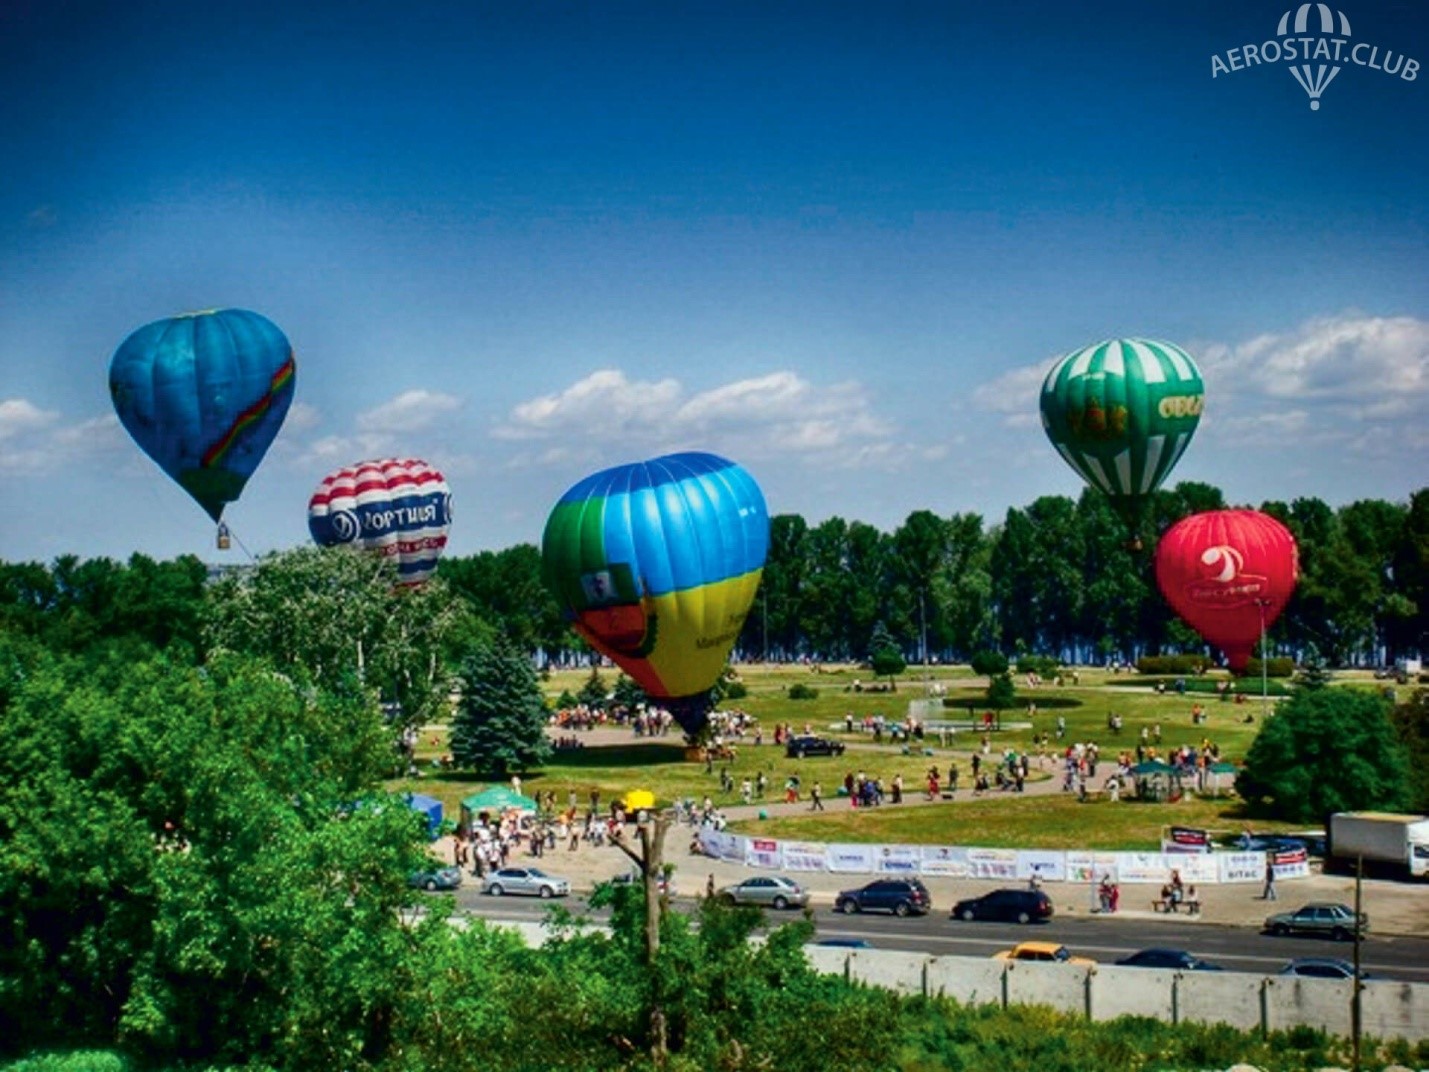 Fliegen in einem Ballon in Tscherkassy.